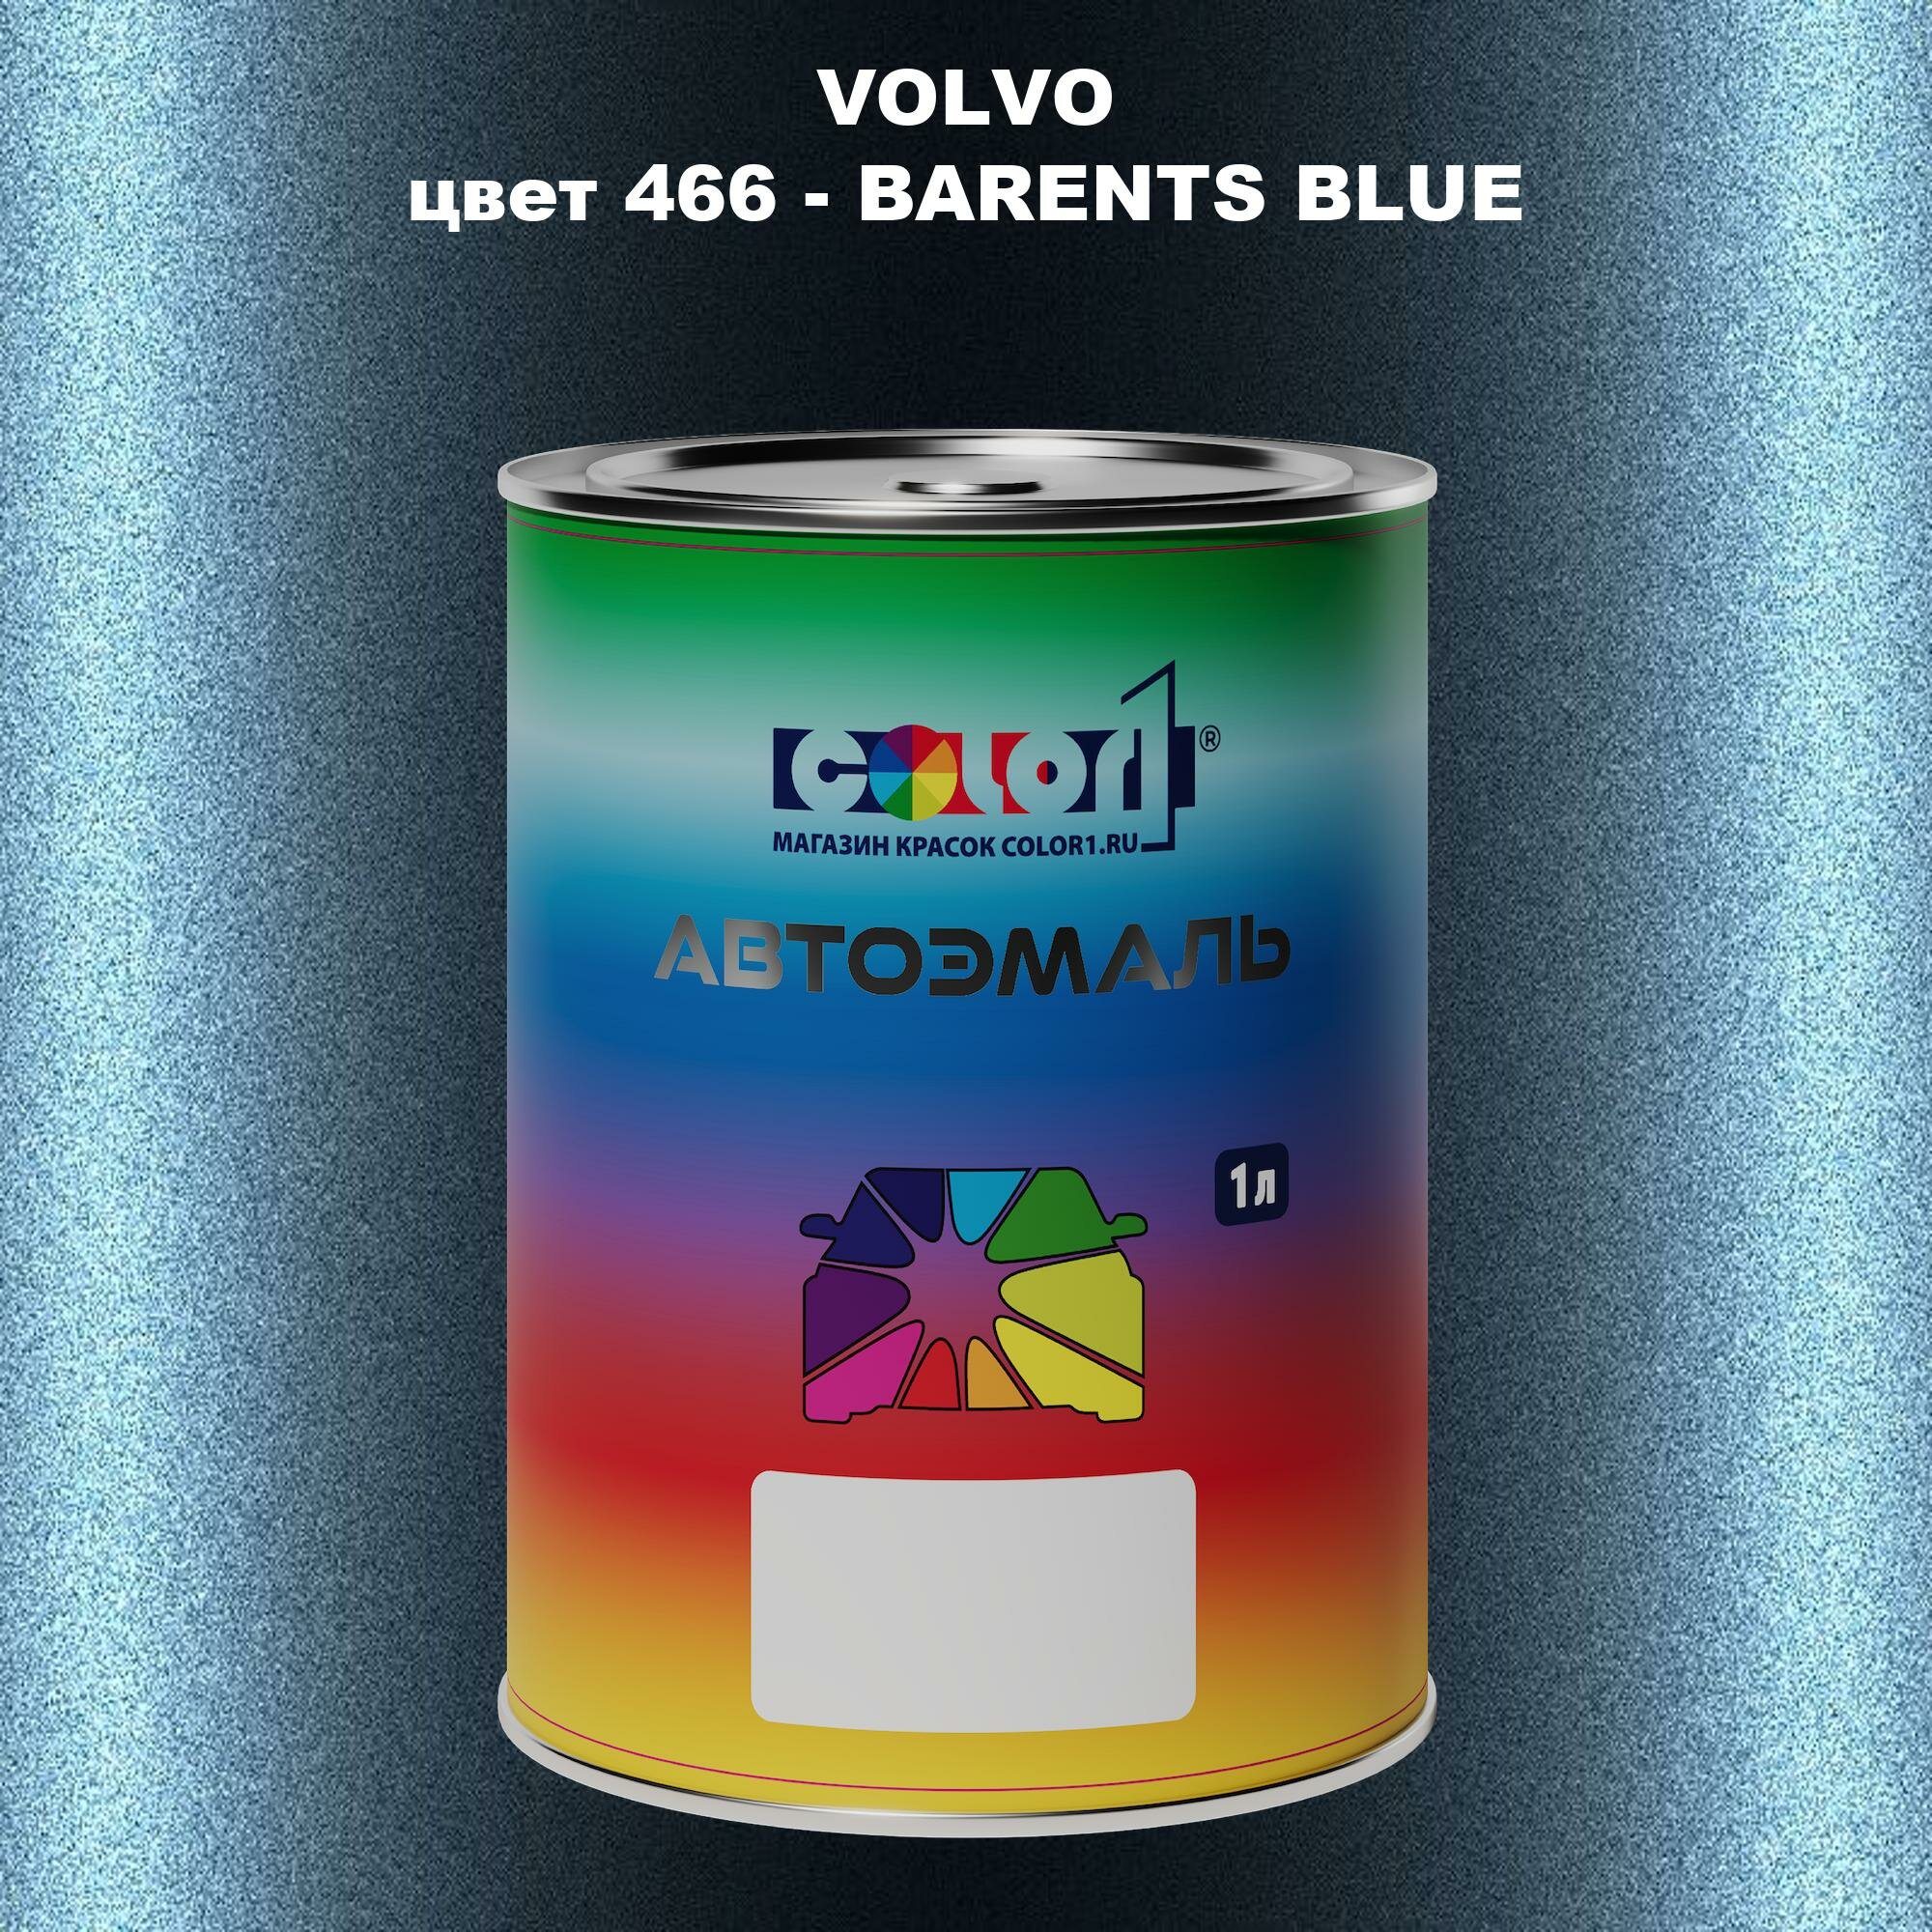 Автомобильная краска COLOR1 для VOLVO цвет 466 - BARENTS BLUE